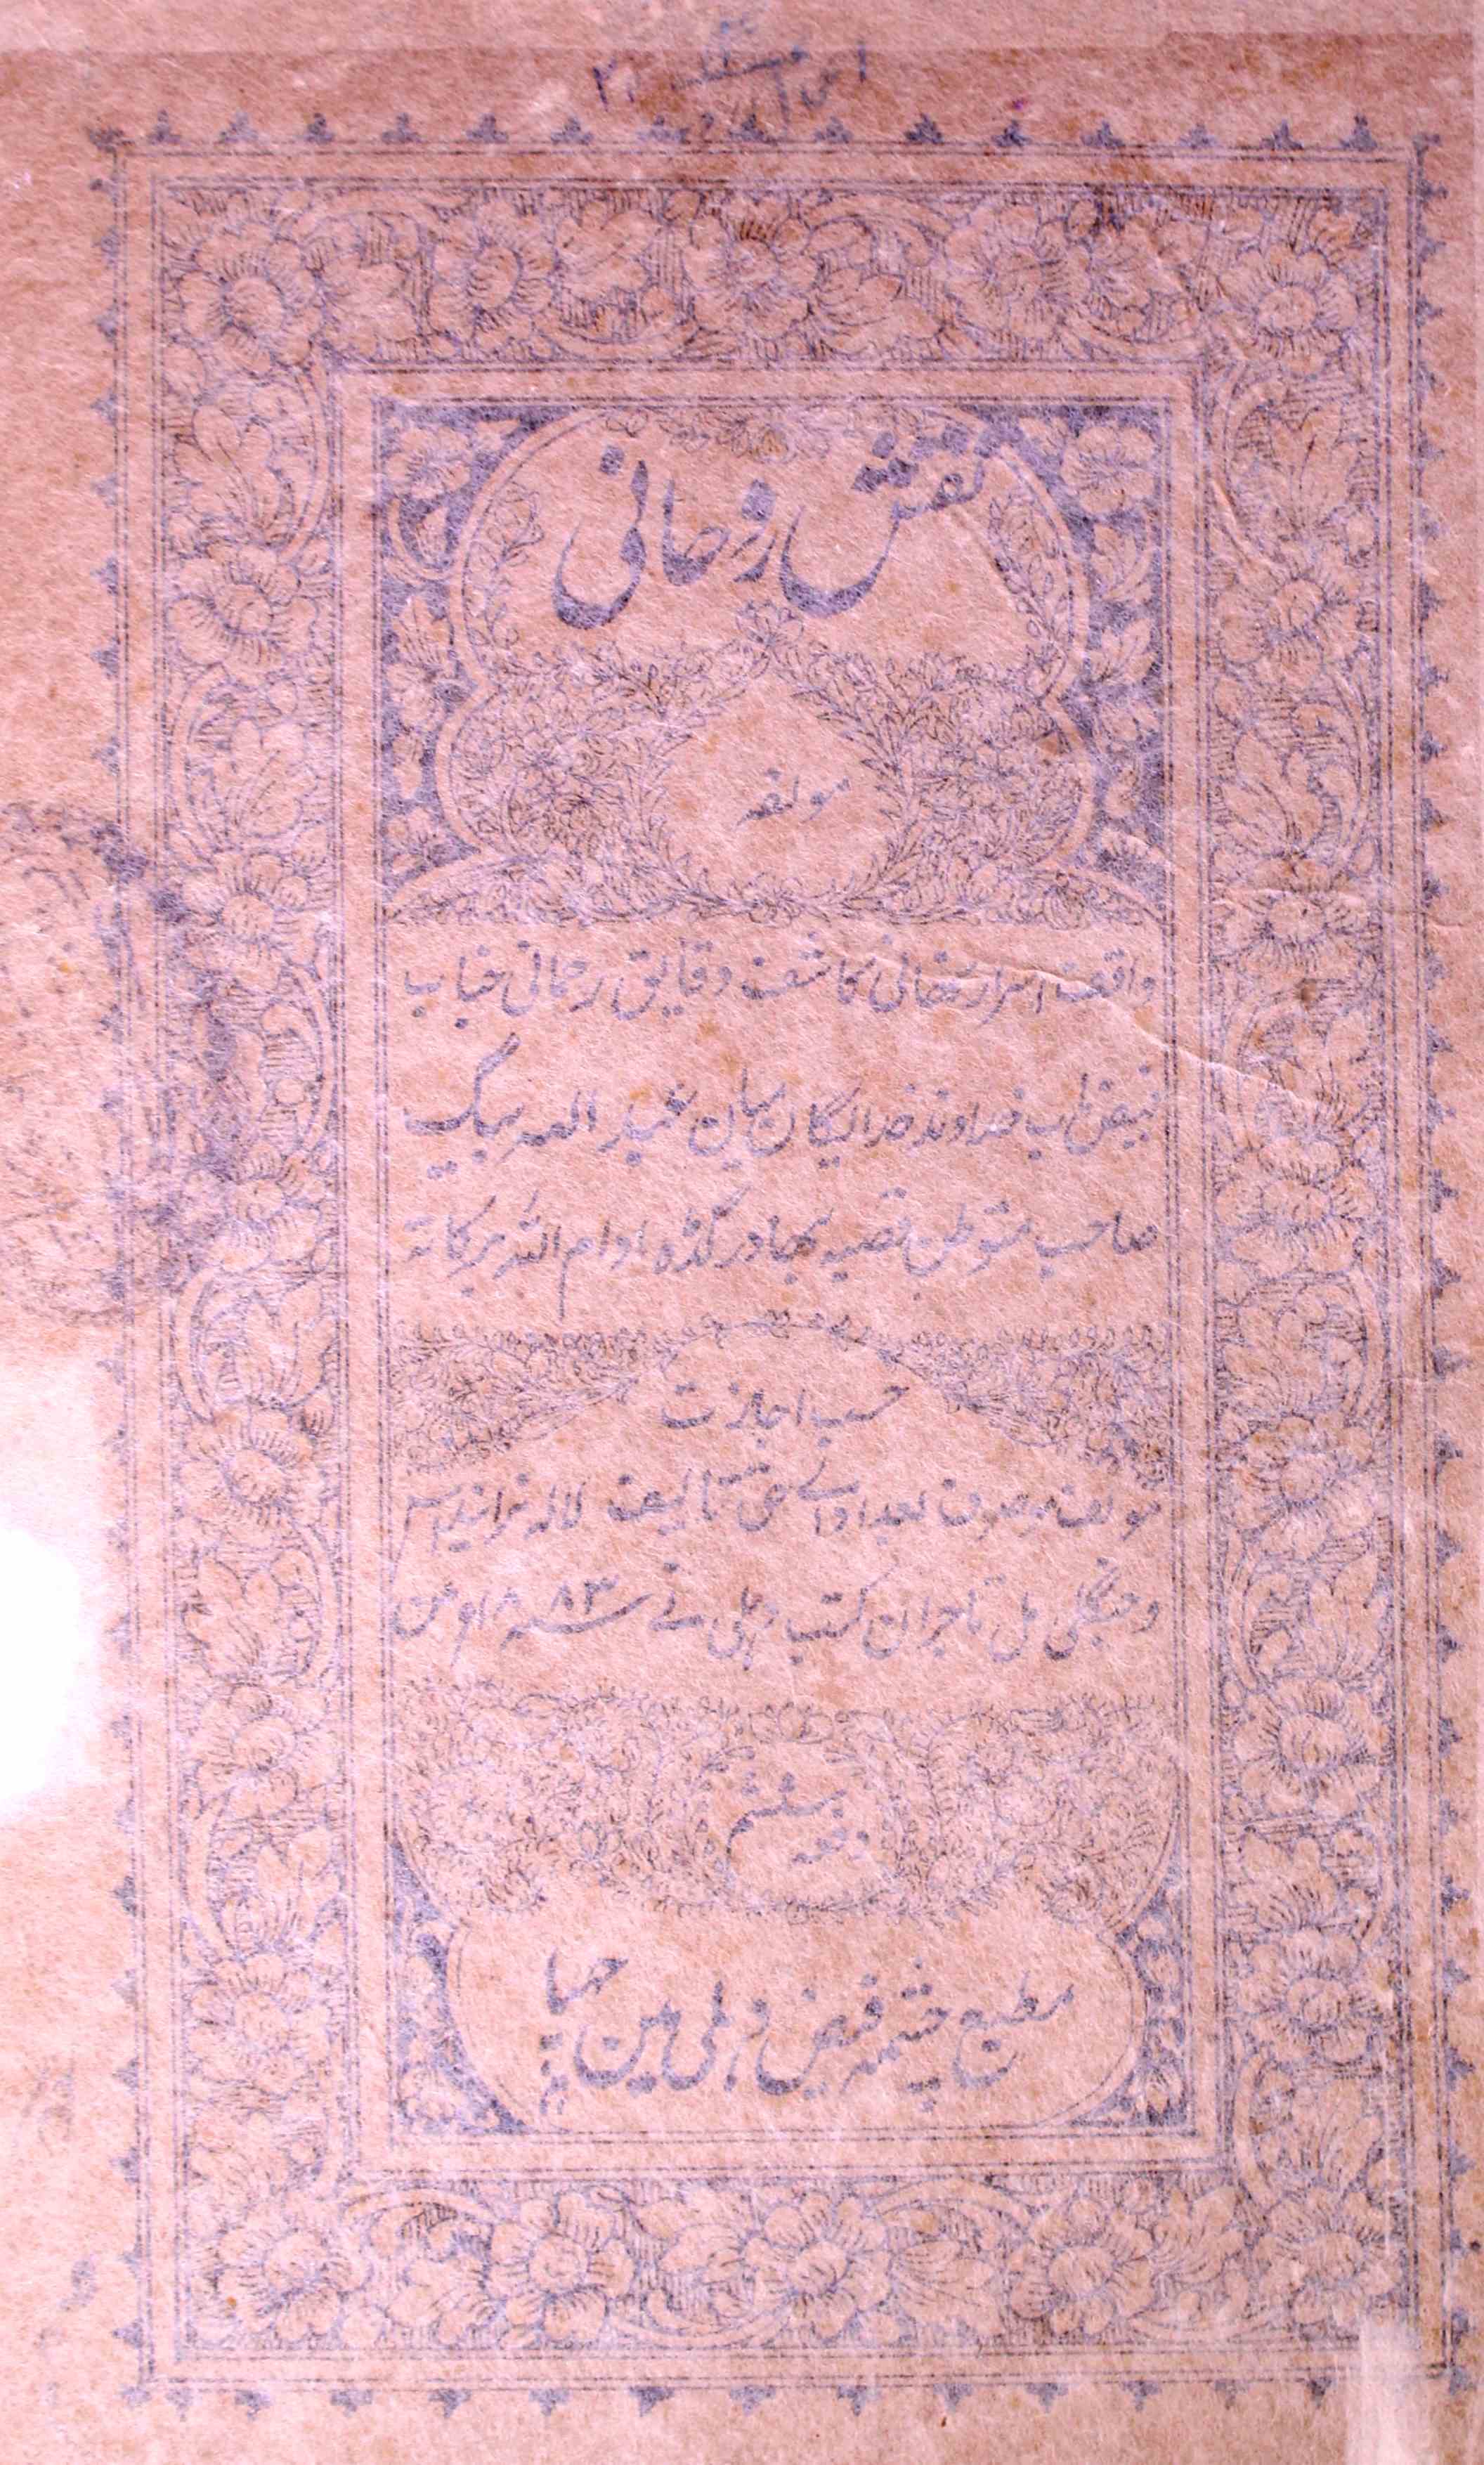 Naqsh-e-Roohani